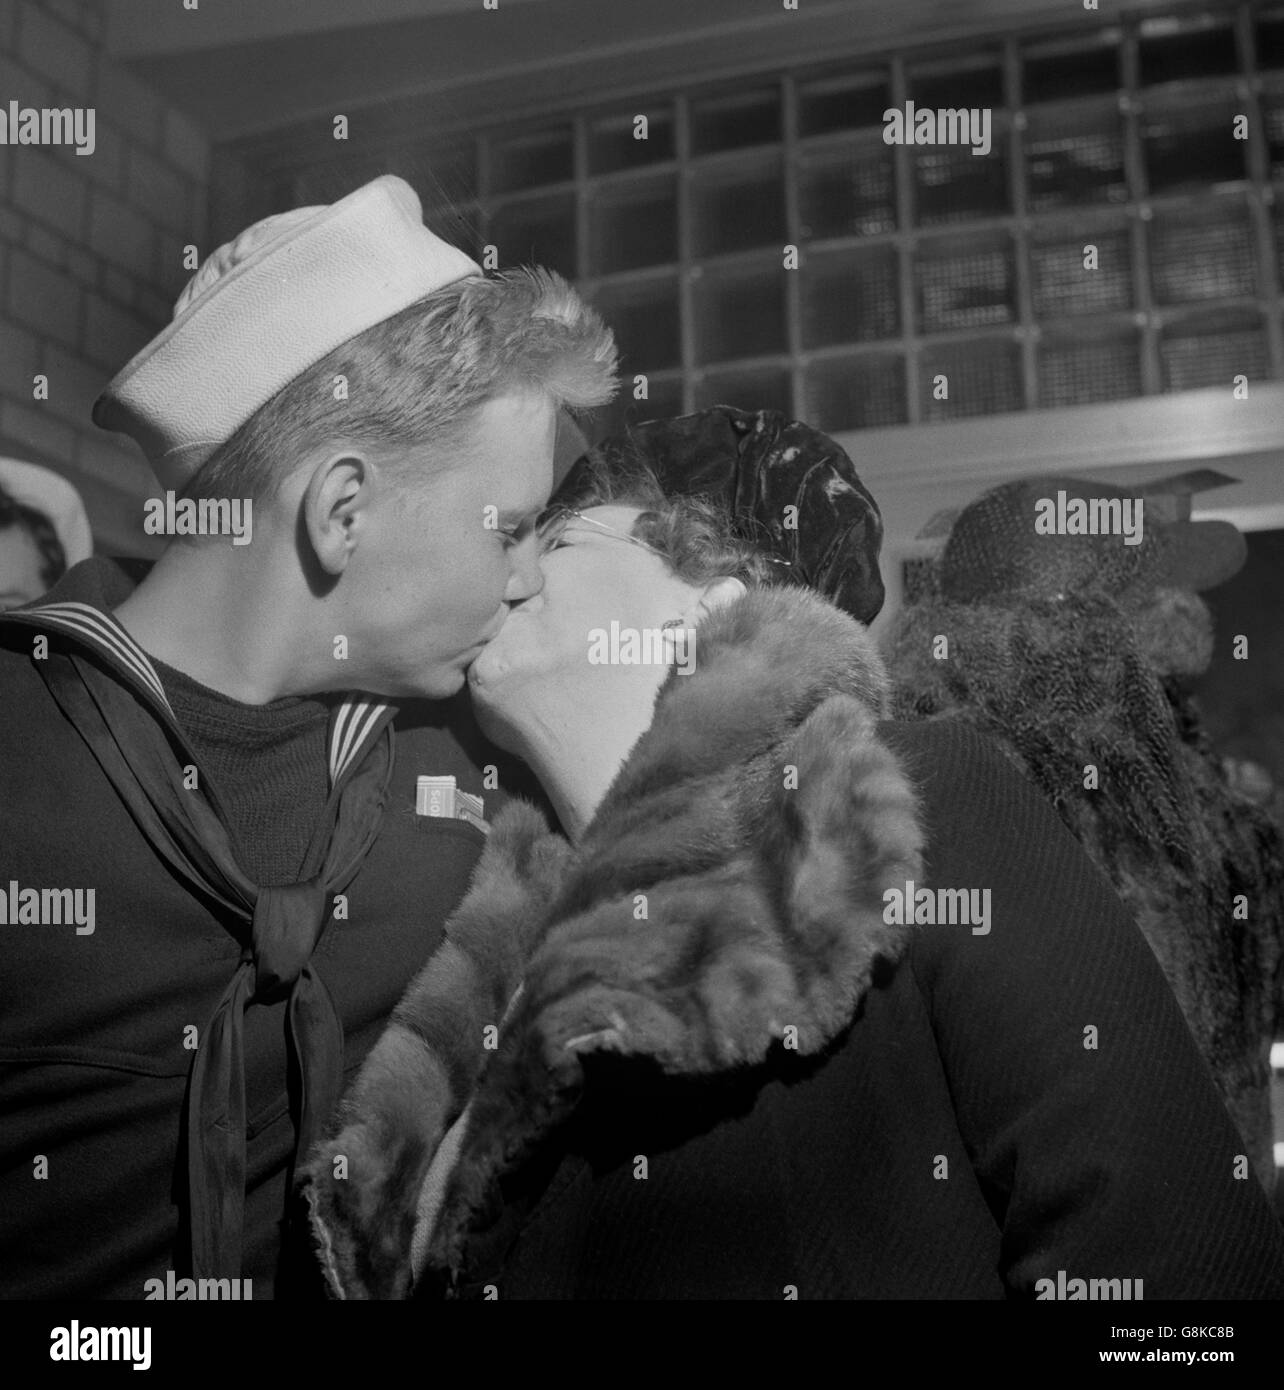 Seemann küssen seiner Mutter verabschiedet am Greyhound Bus Terminal, Washington DC, USA, Esther Bubley für Office of War Information, April 1943 Stockfoto